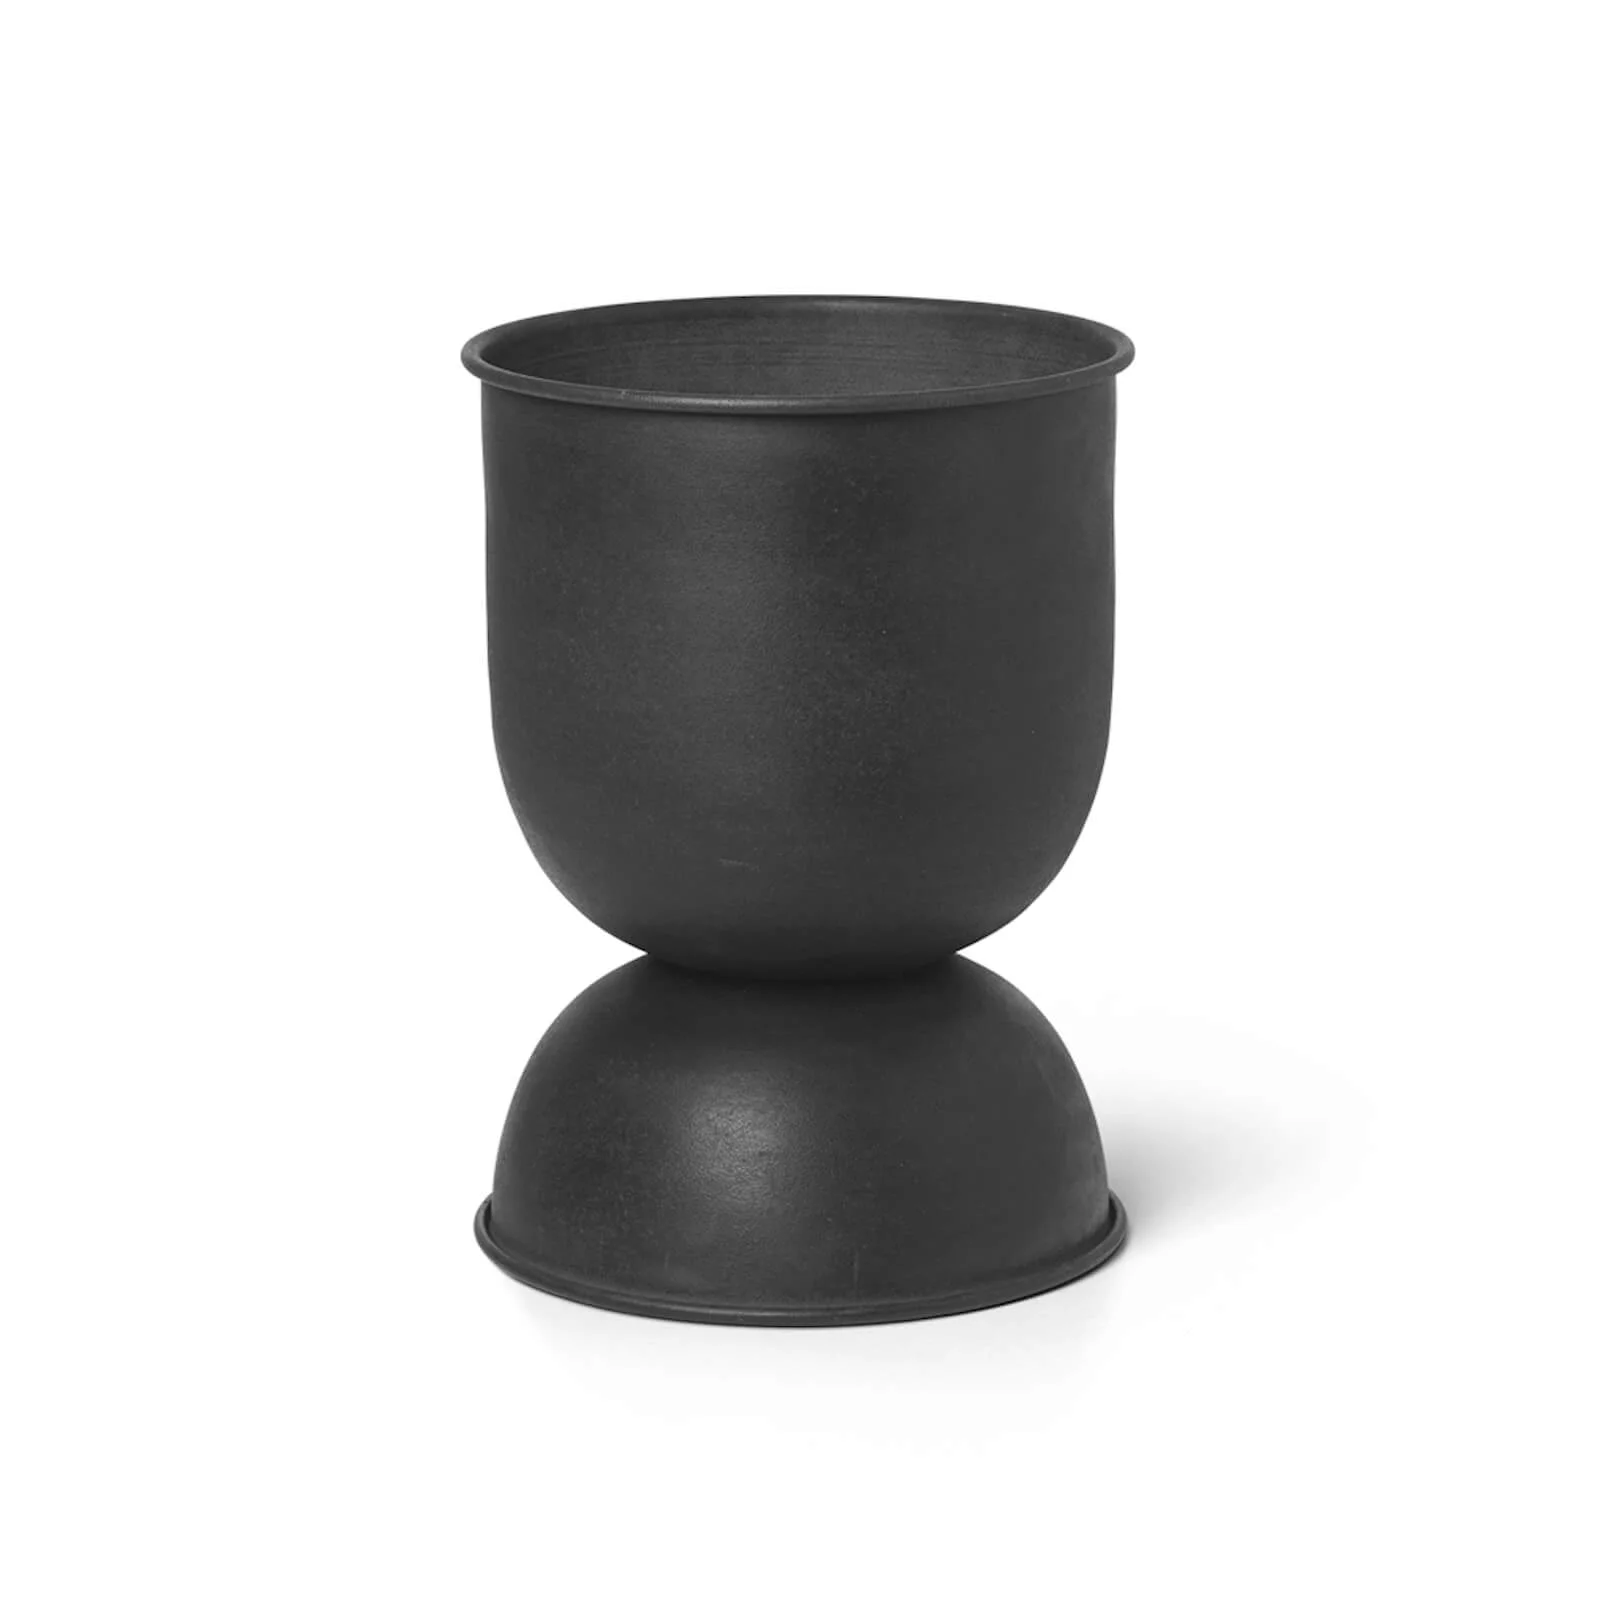 Ferm Living Hourglass Pot - Black/Dark Grey - Extra Small Image 1